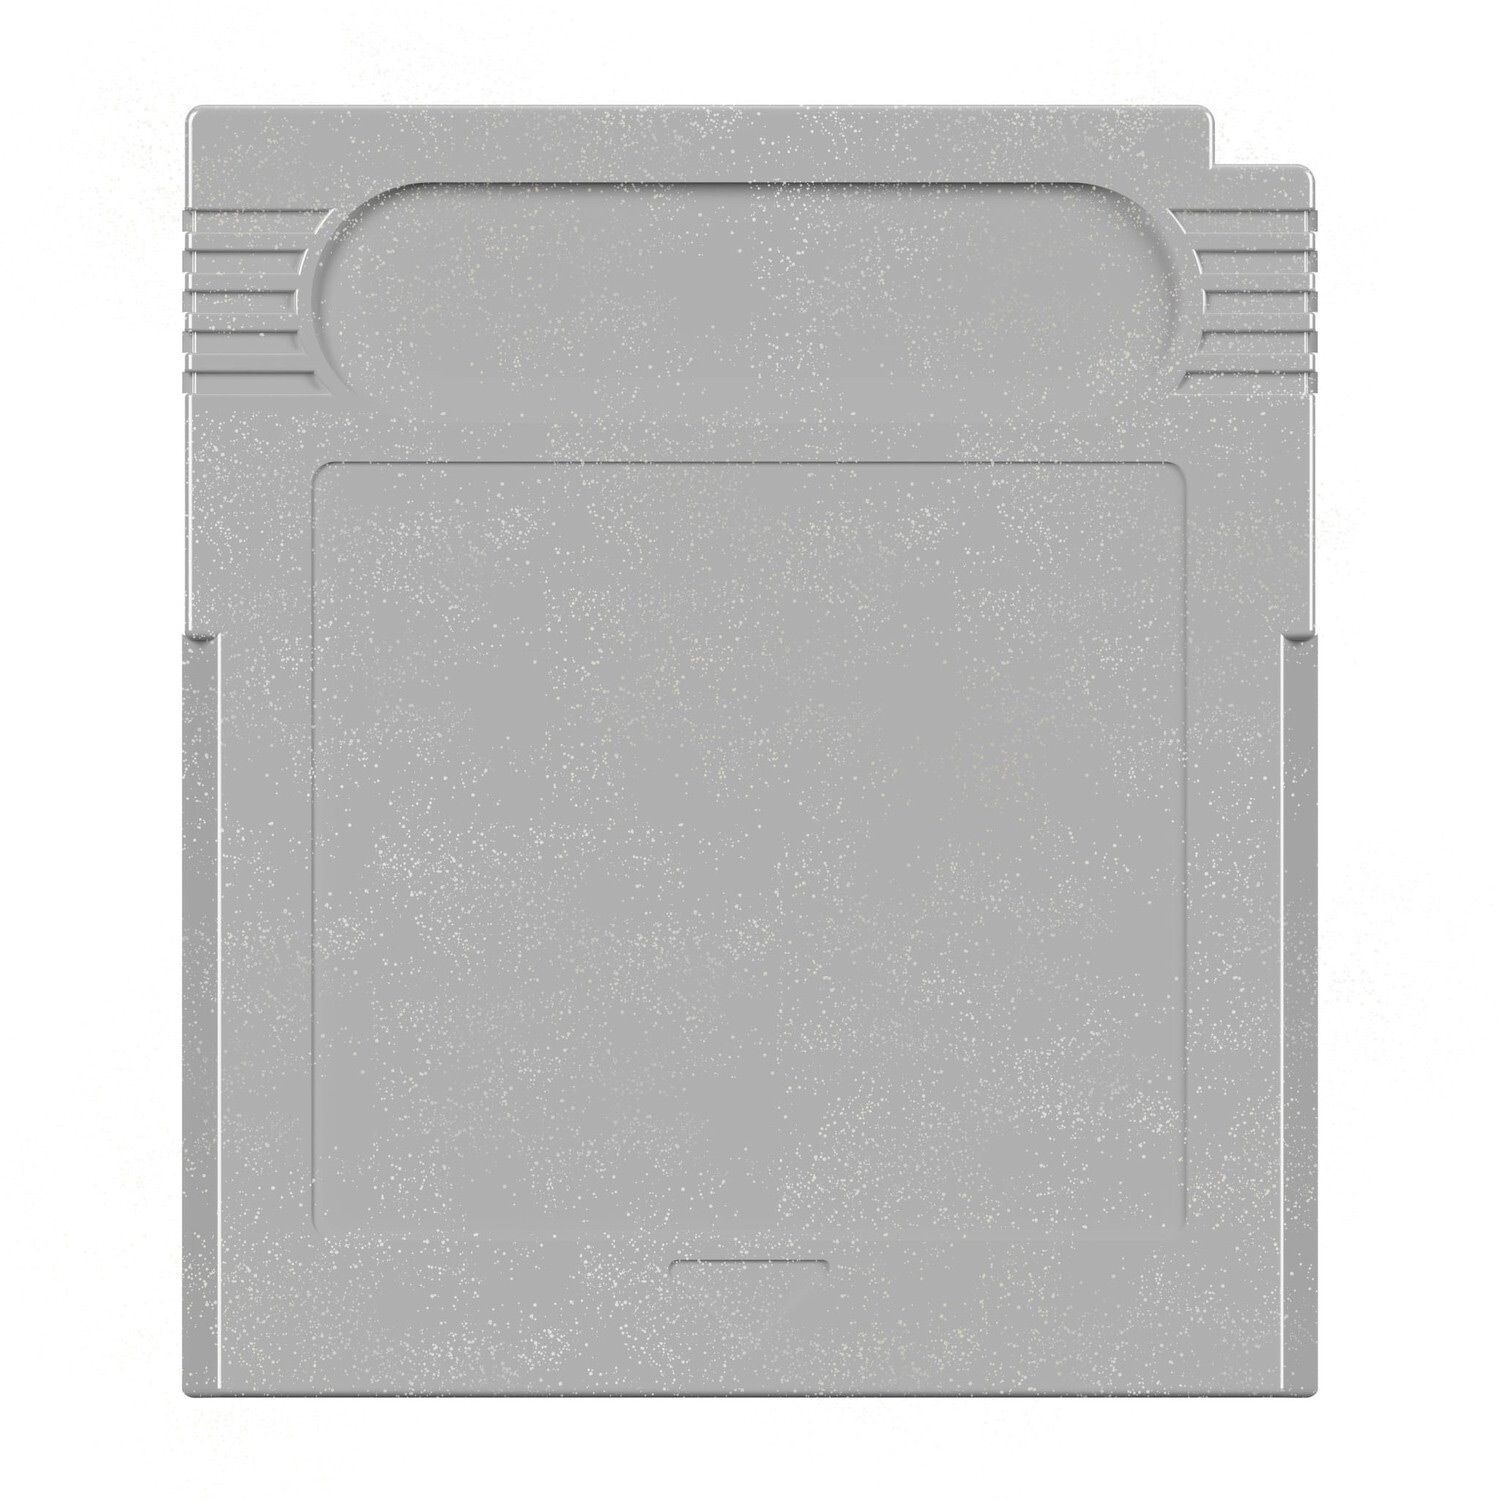 Game Boy Modul Gehäuse (Silber)